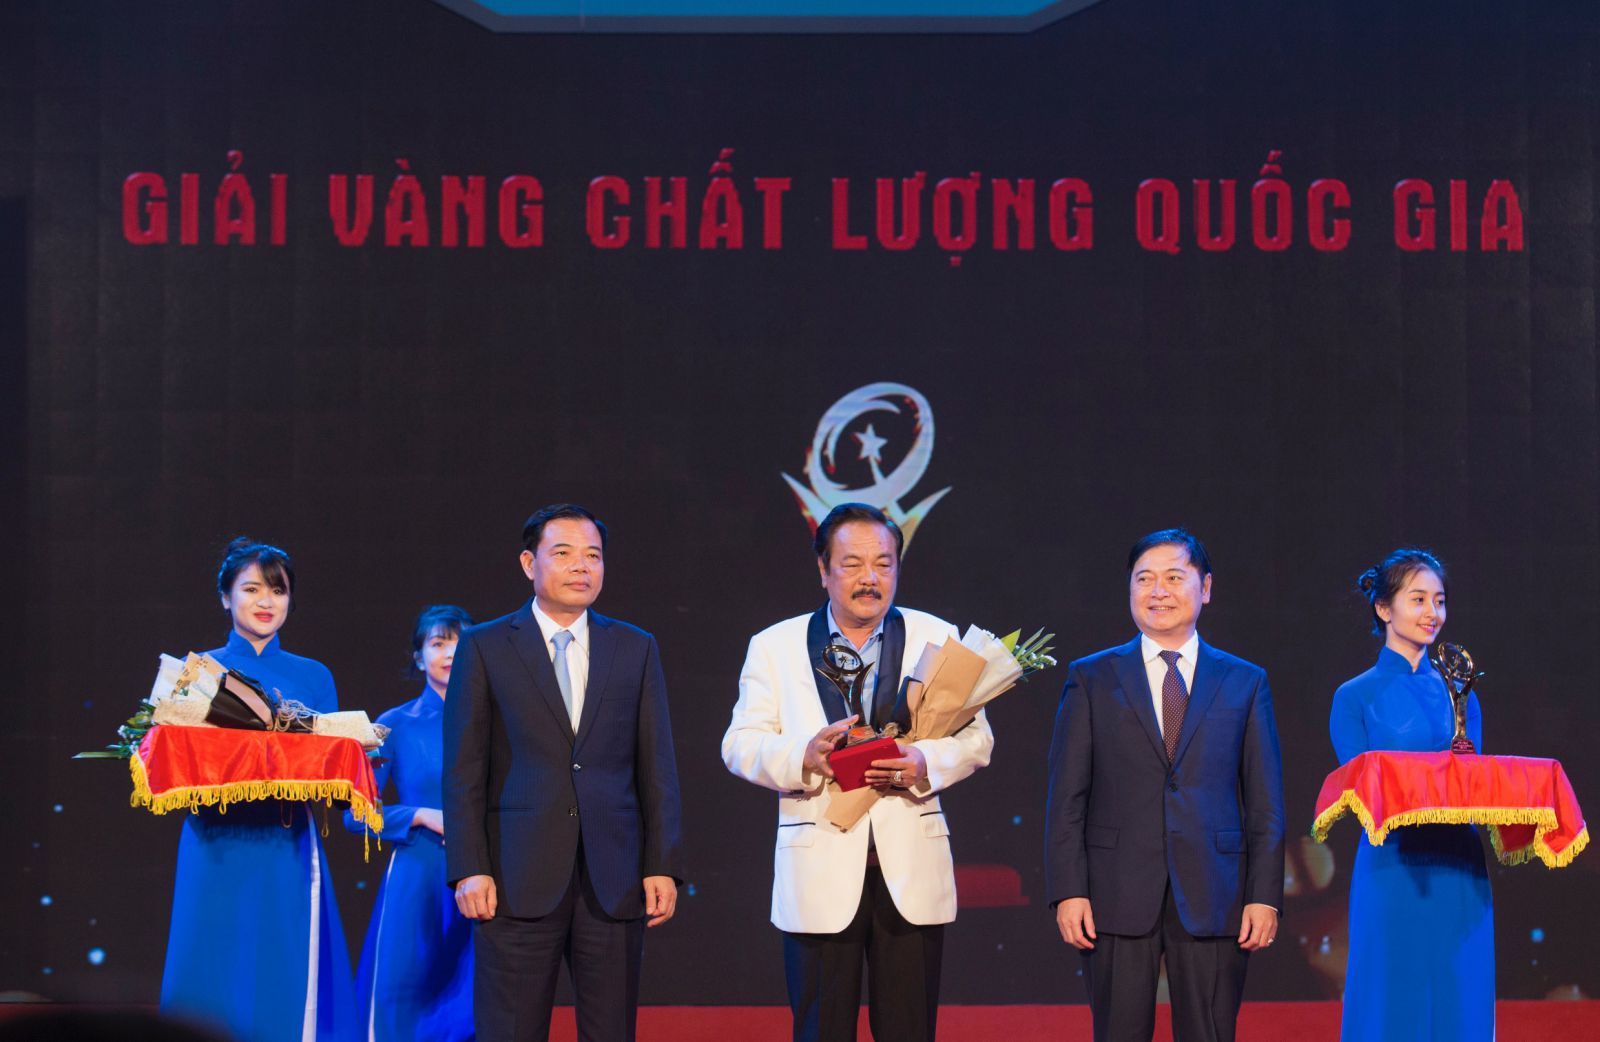 Bộ trưởng Bộ Nông nghiệp và Phát triển nông thôn Nguyễn Xuân Cường trao Giải Vàng Chất lượng Quốc gia cho Tiến sĩ Trần Quí Thanh, CEO Tập đoàn Tân Hiệp Phát.